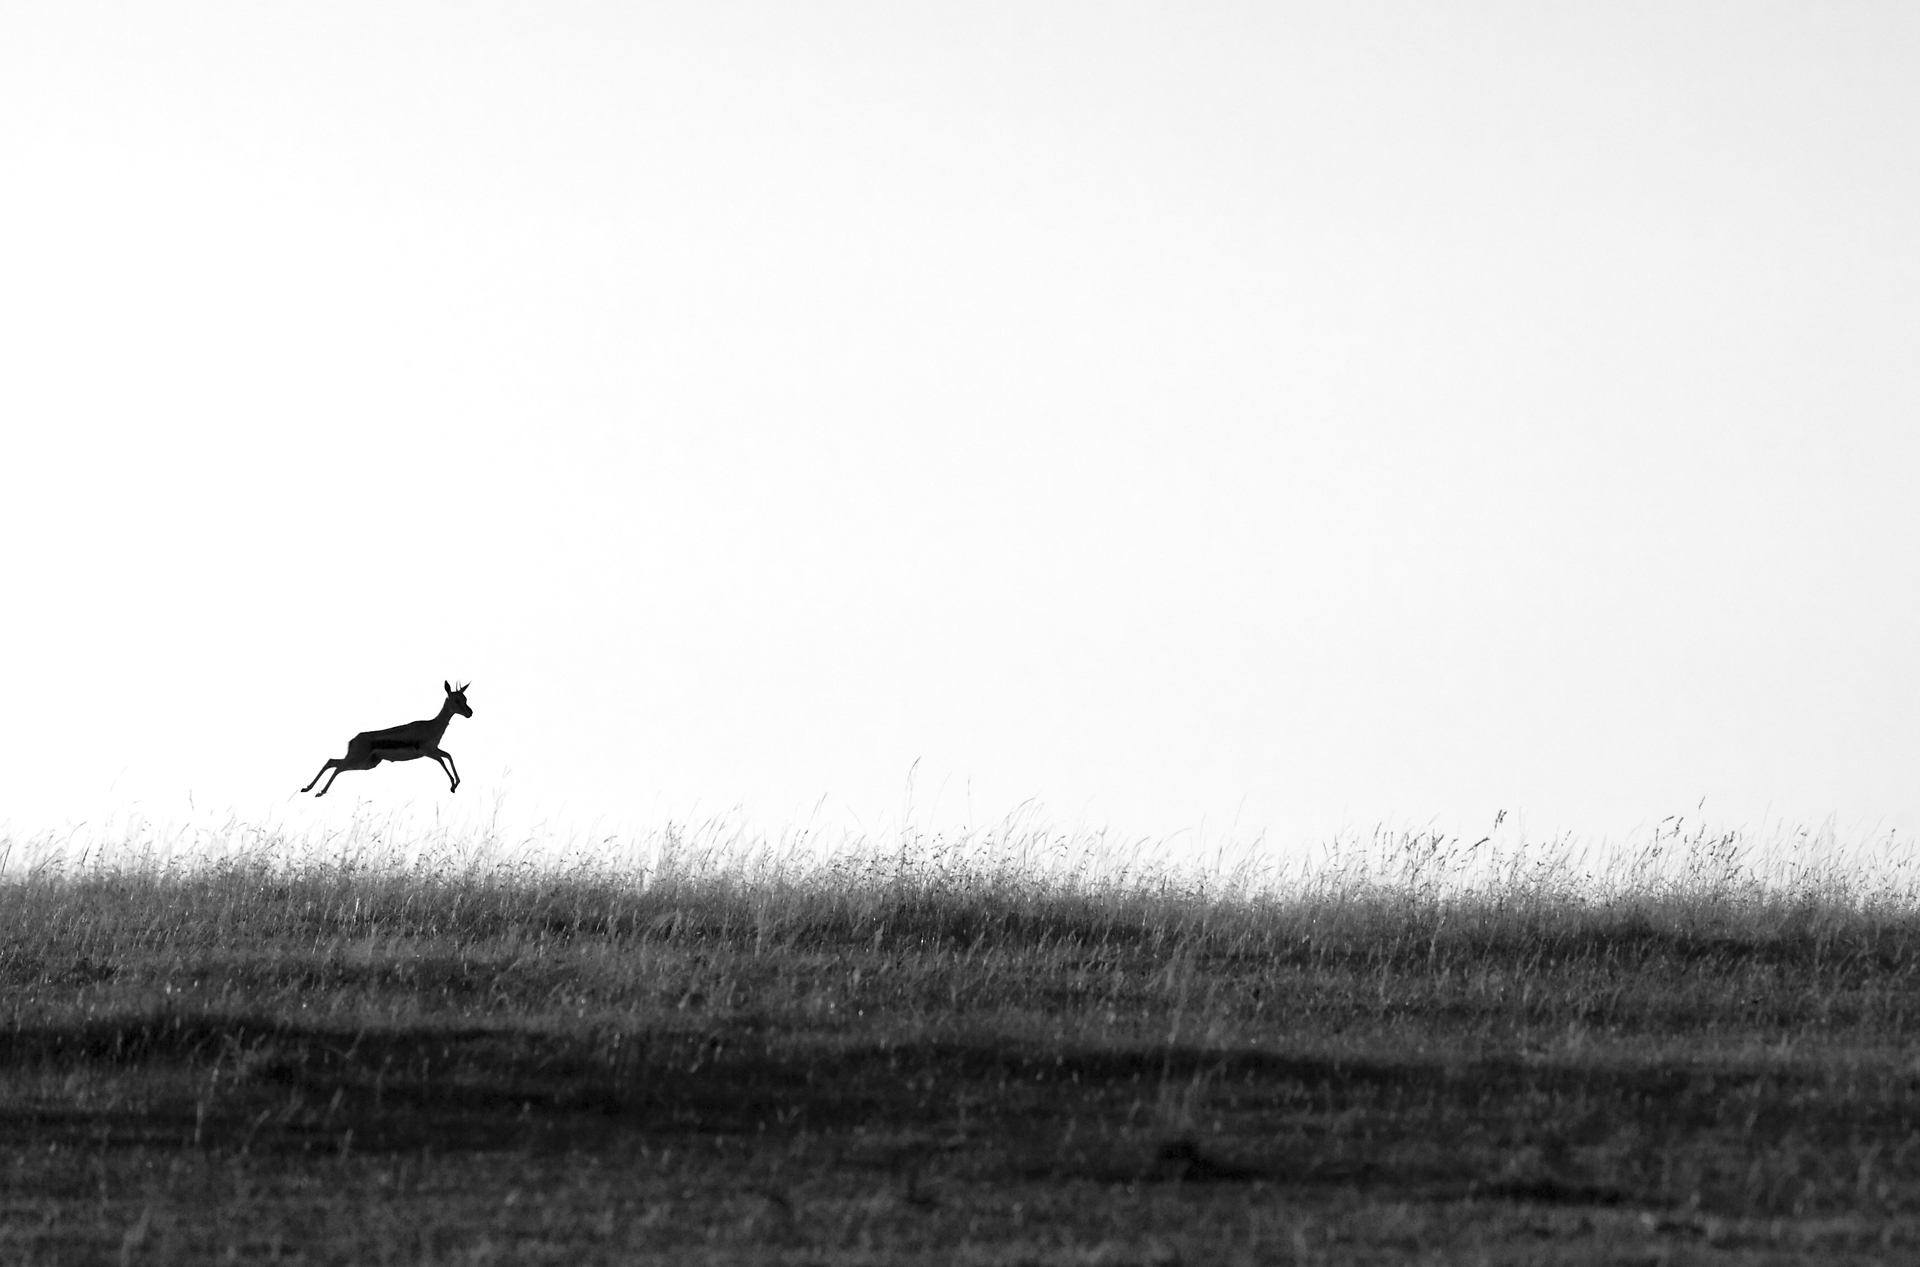  2011. Masai Mara, Kenya. 